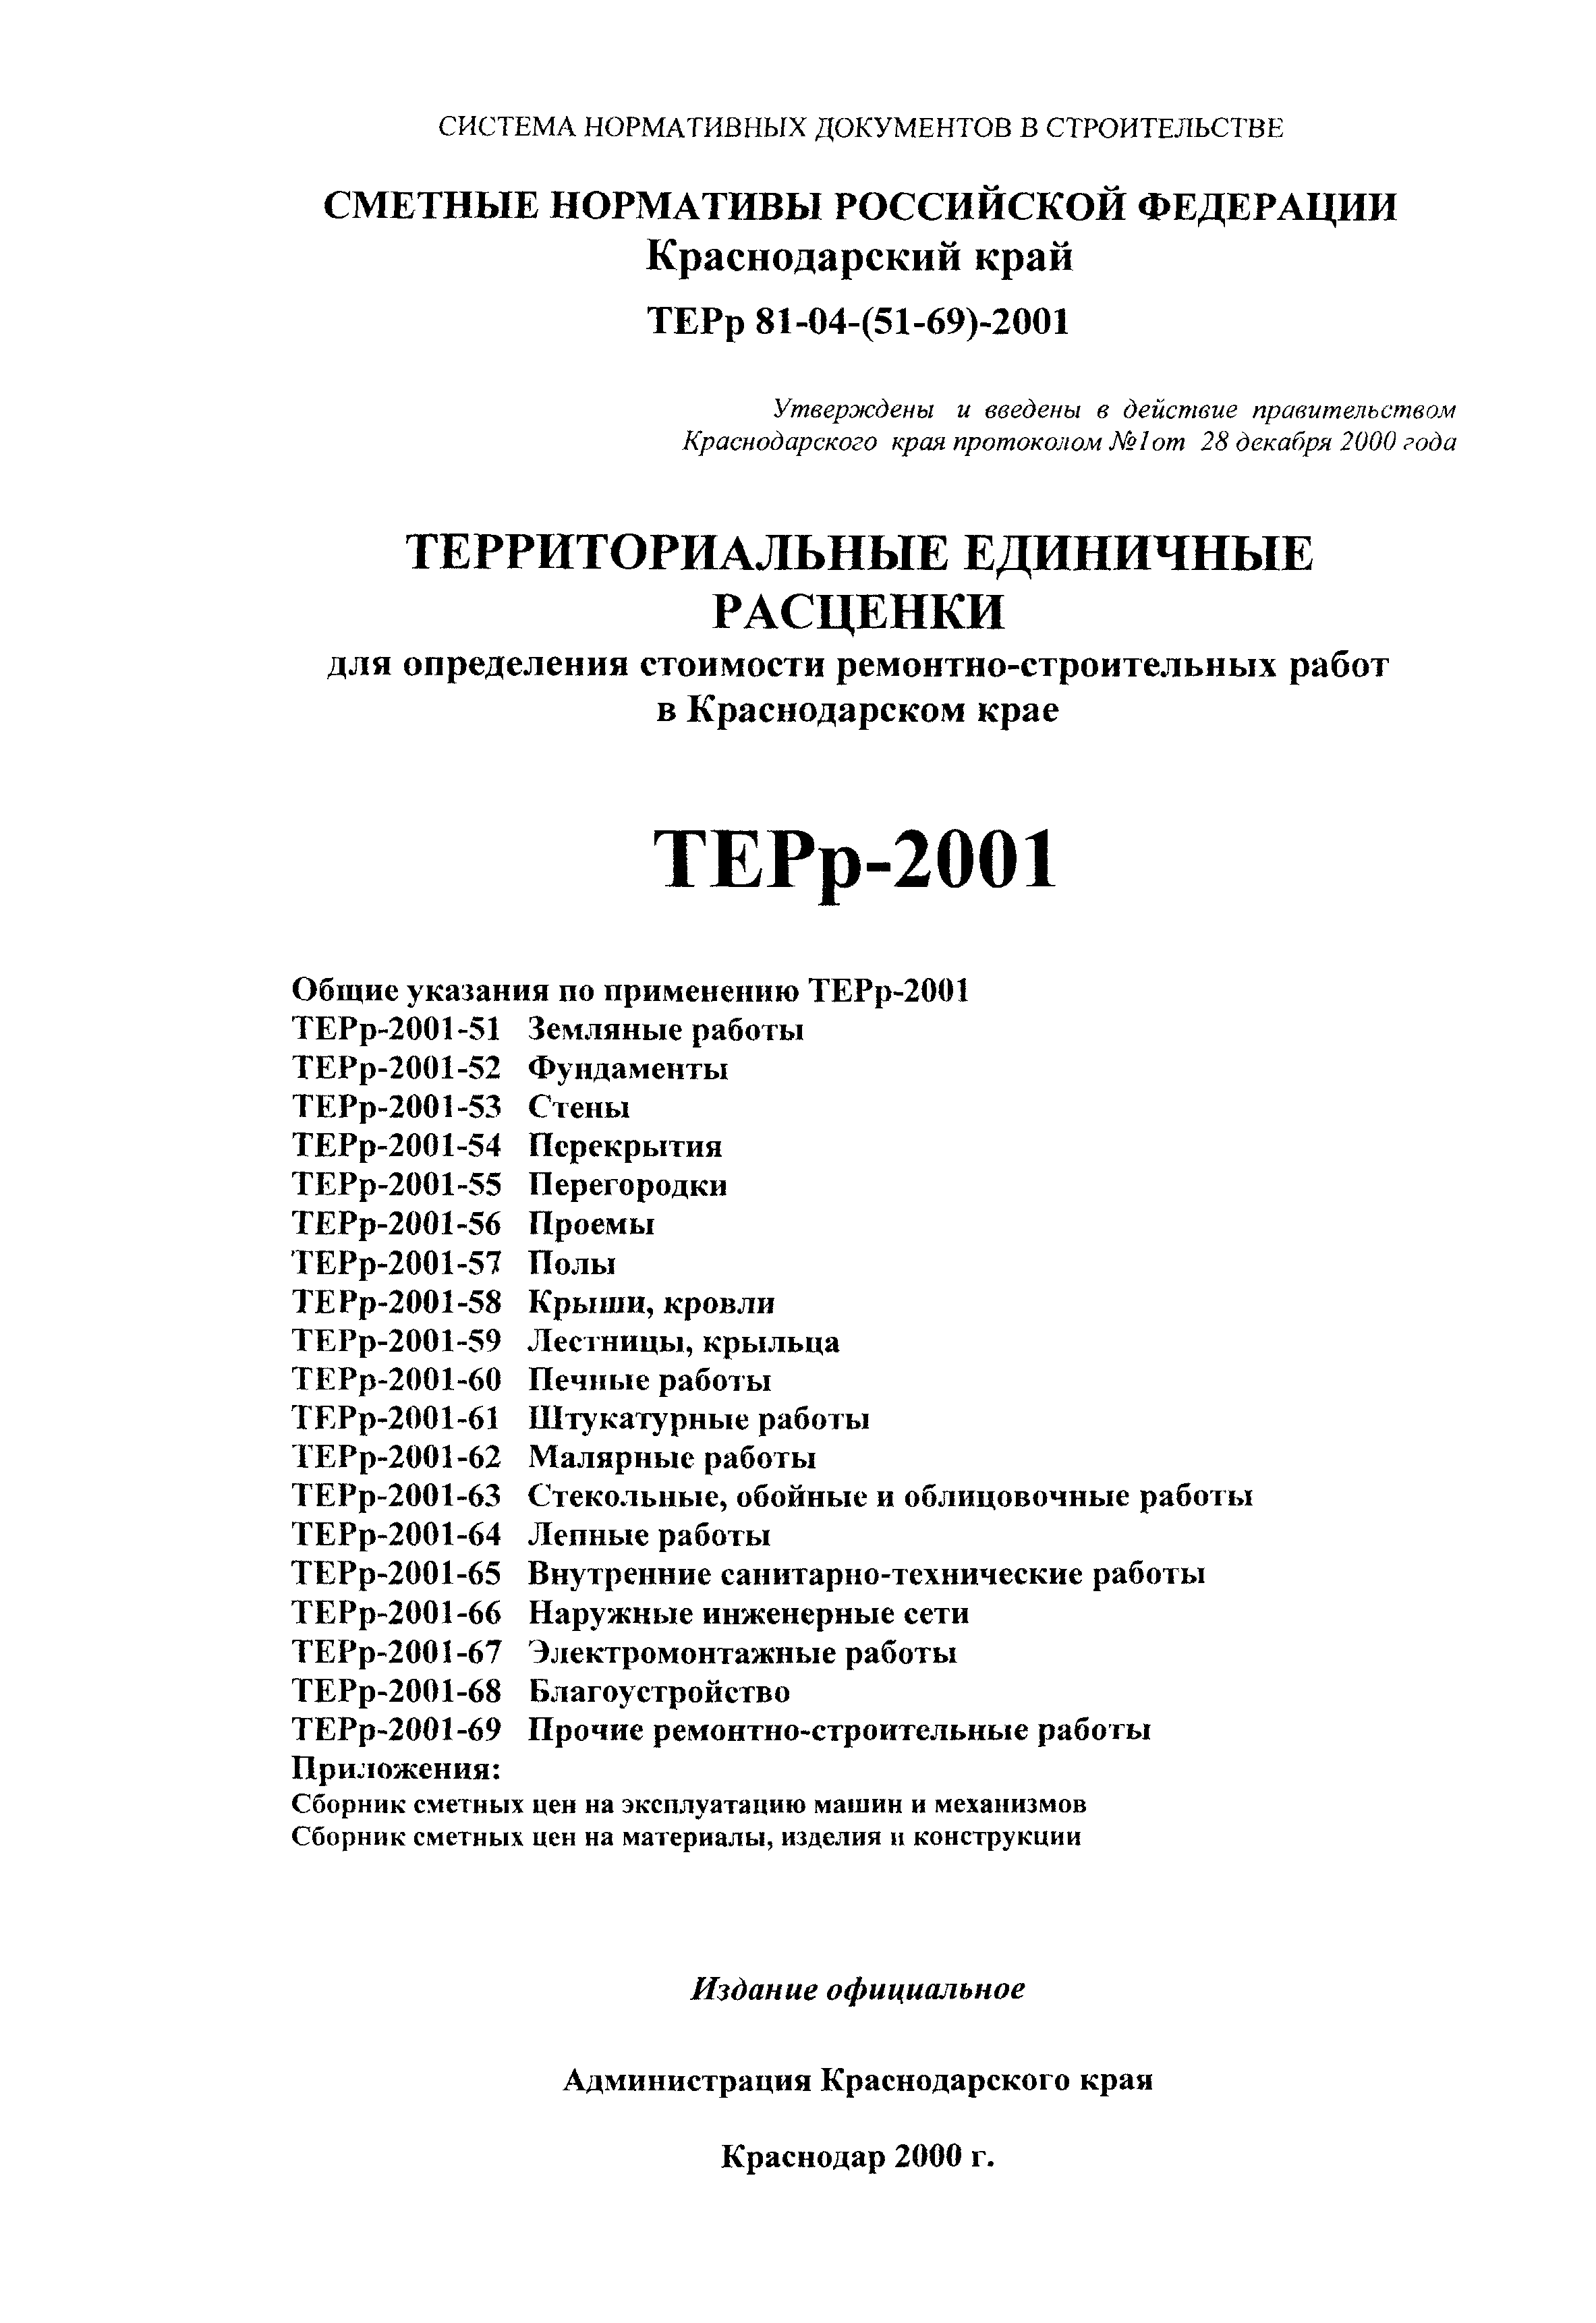 ТЕРр Краснодарского края 2001-58